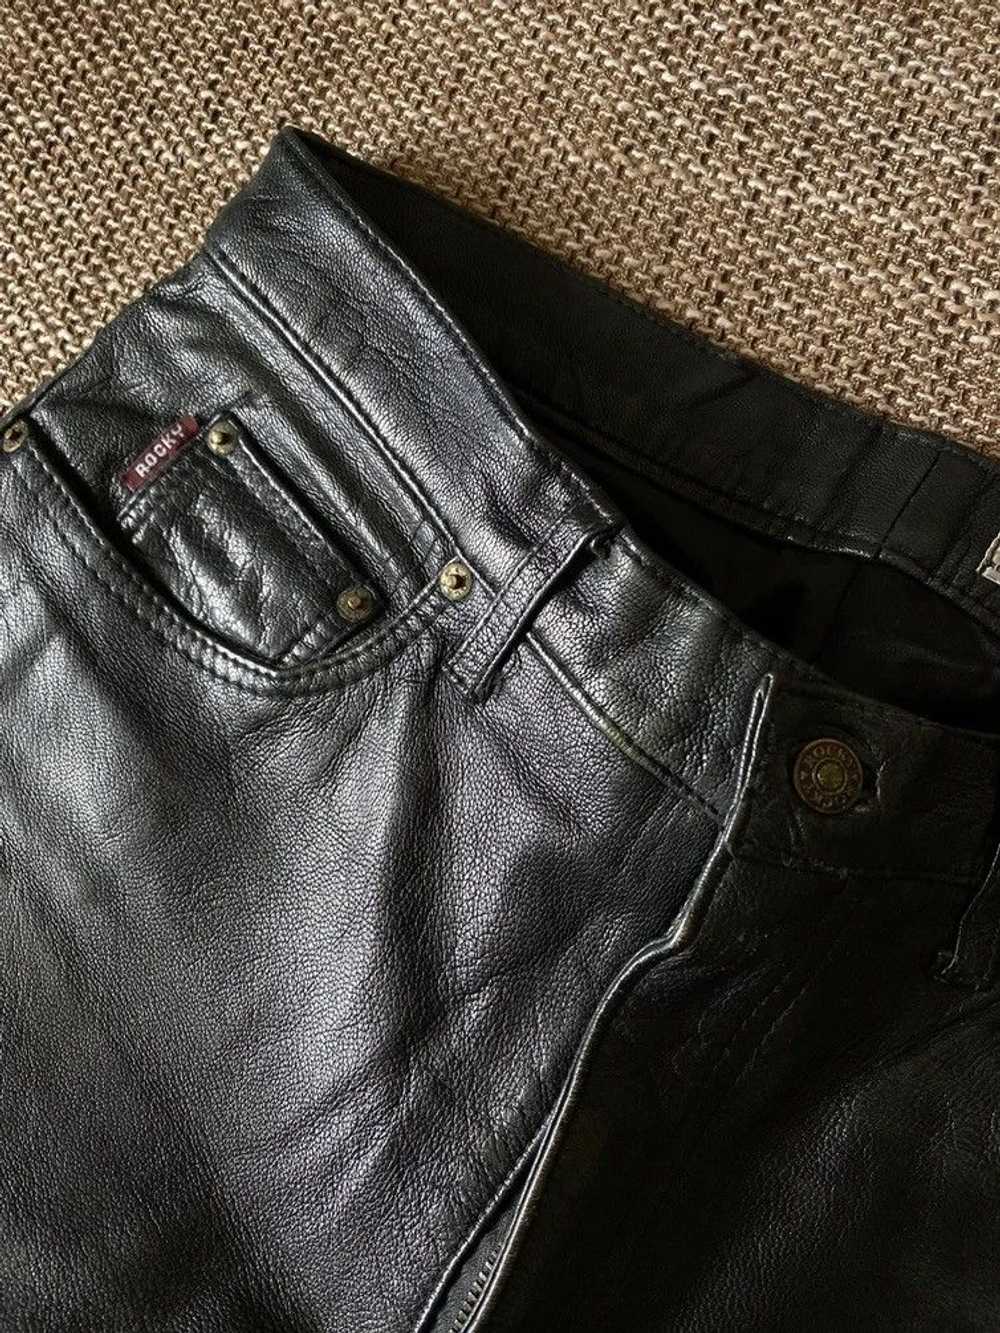 Genuine Leather × Leather × Vintage Vintage leath… - image 6